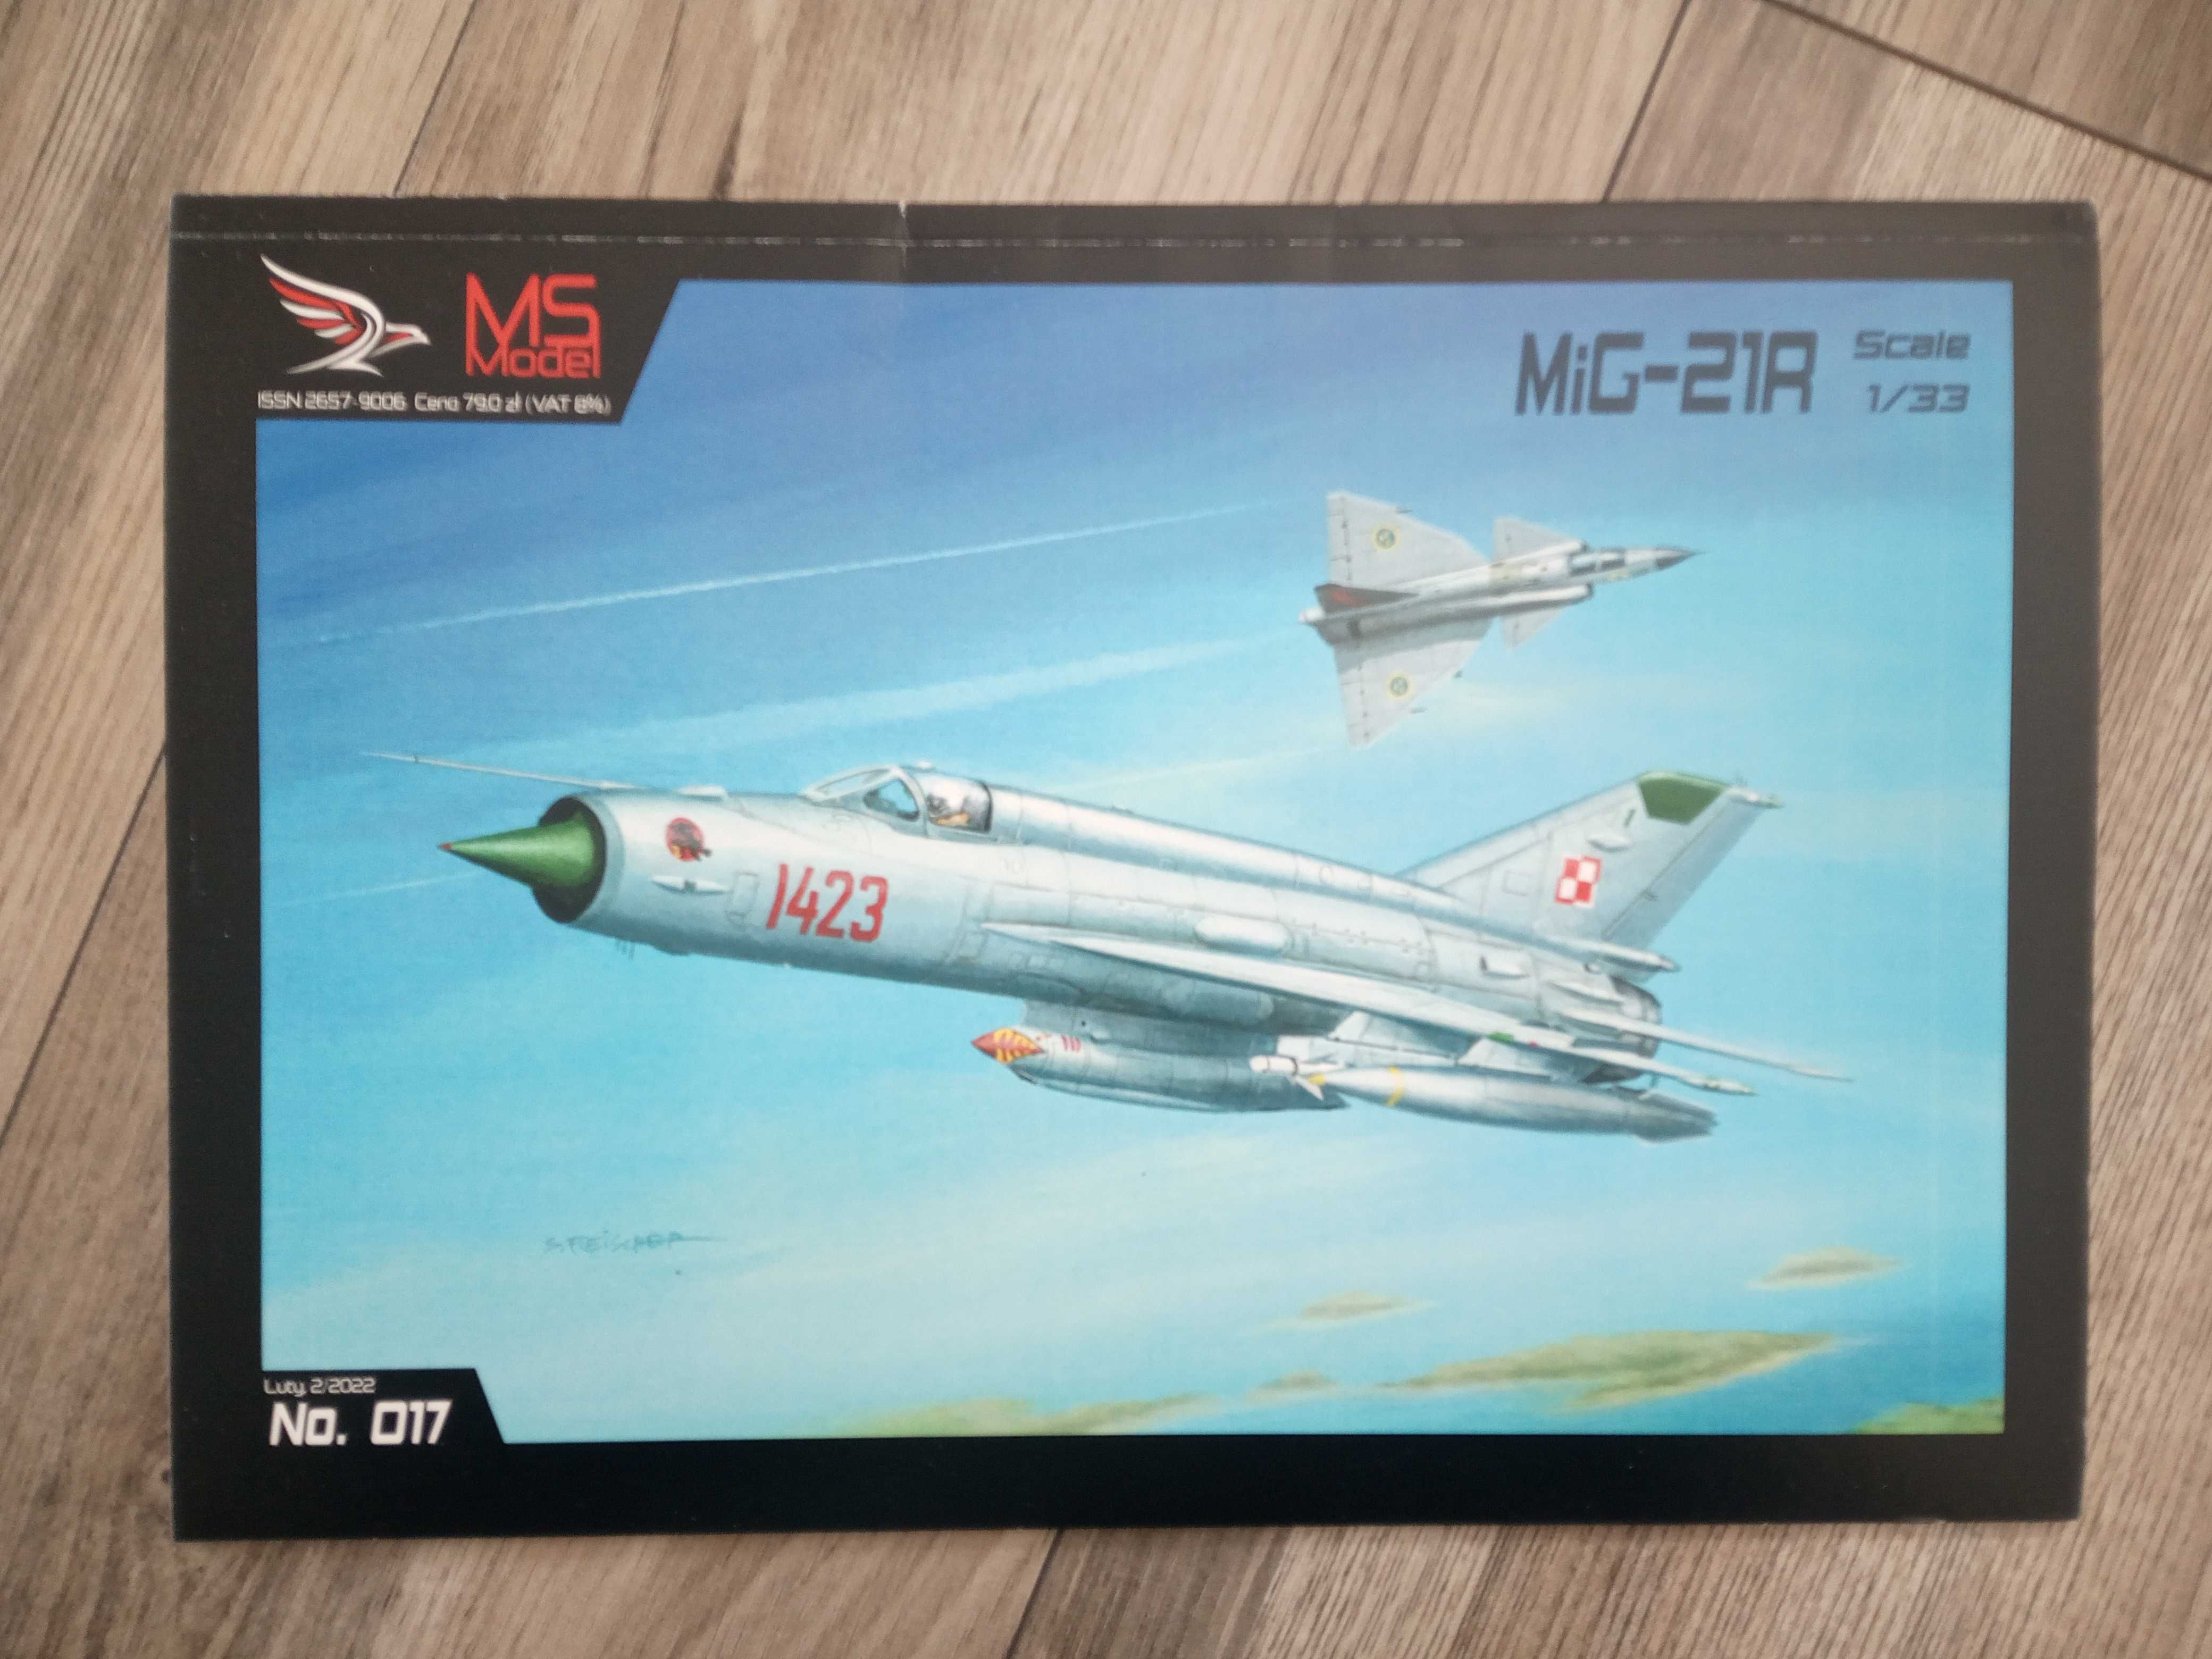 Model kartonowy MiG-21 R z wyd. MS Model